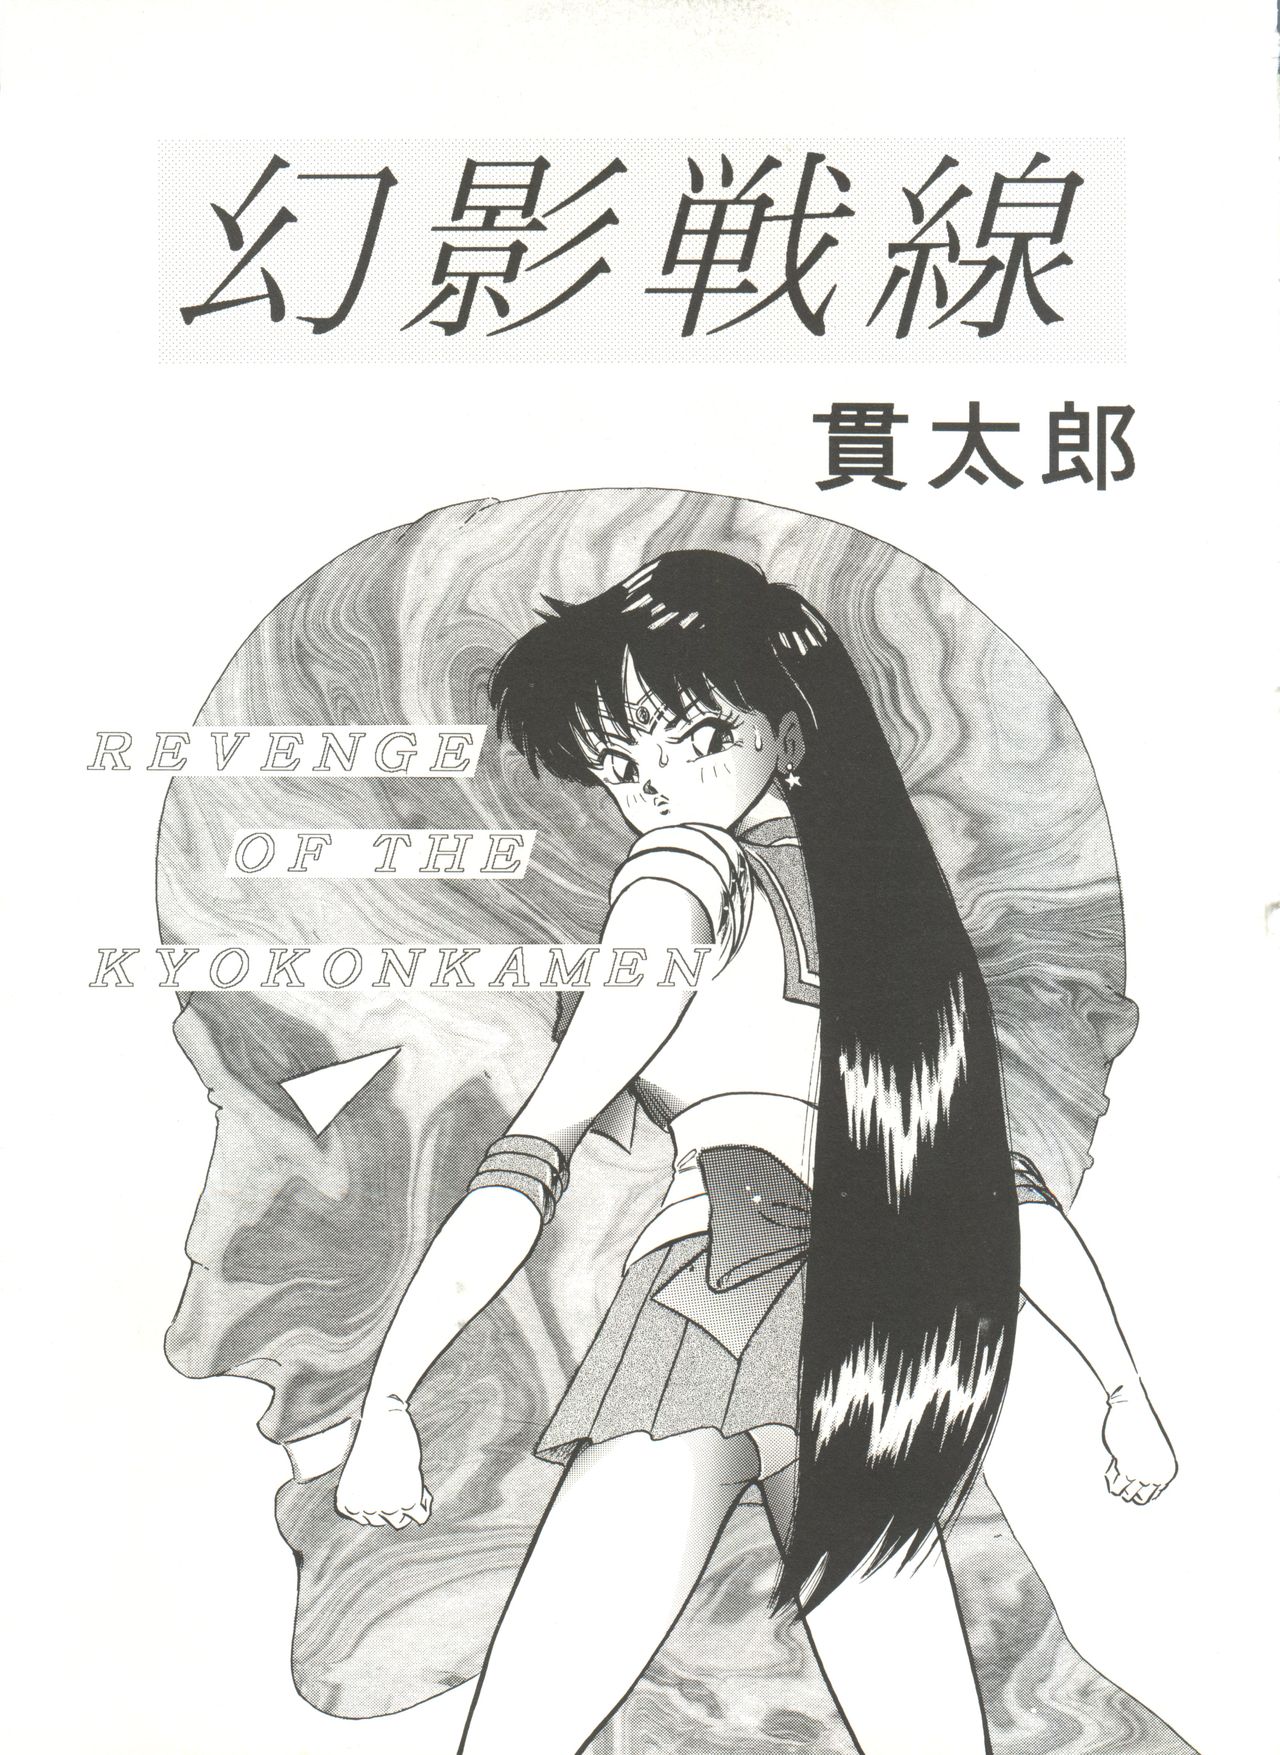 [Anthology] Bishoujo Doujinshi Anthology 16 - Moon Paradise 10 Tsuki no Rakuen (Bishoujo Senshi Sailor Moon) page 30 full